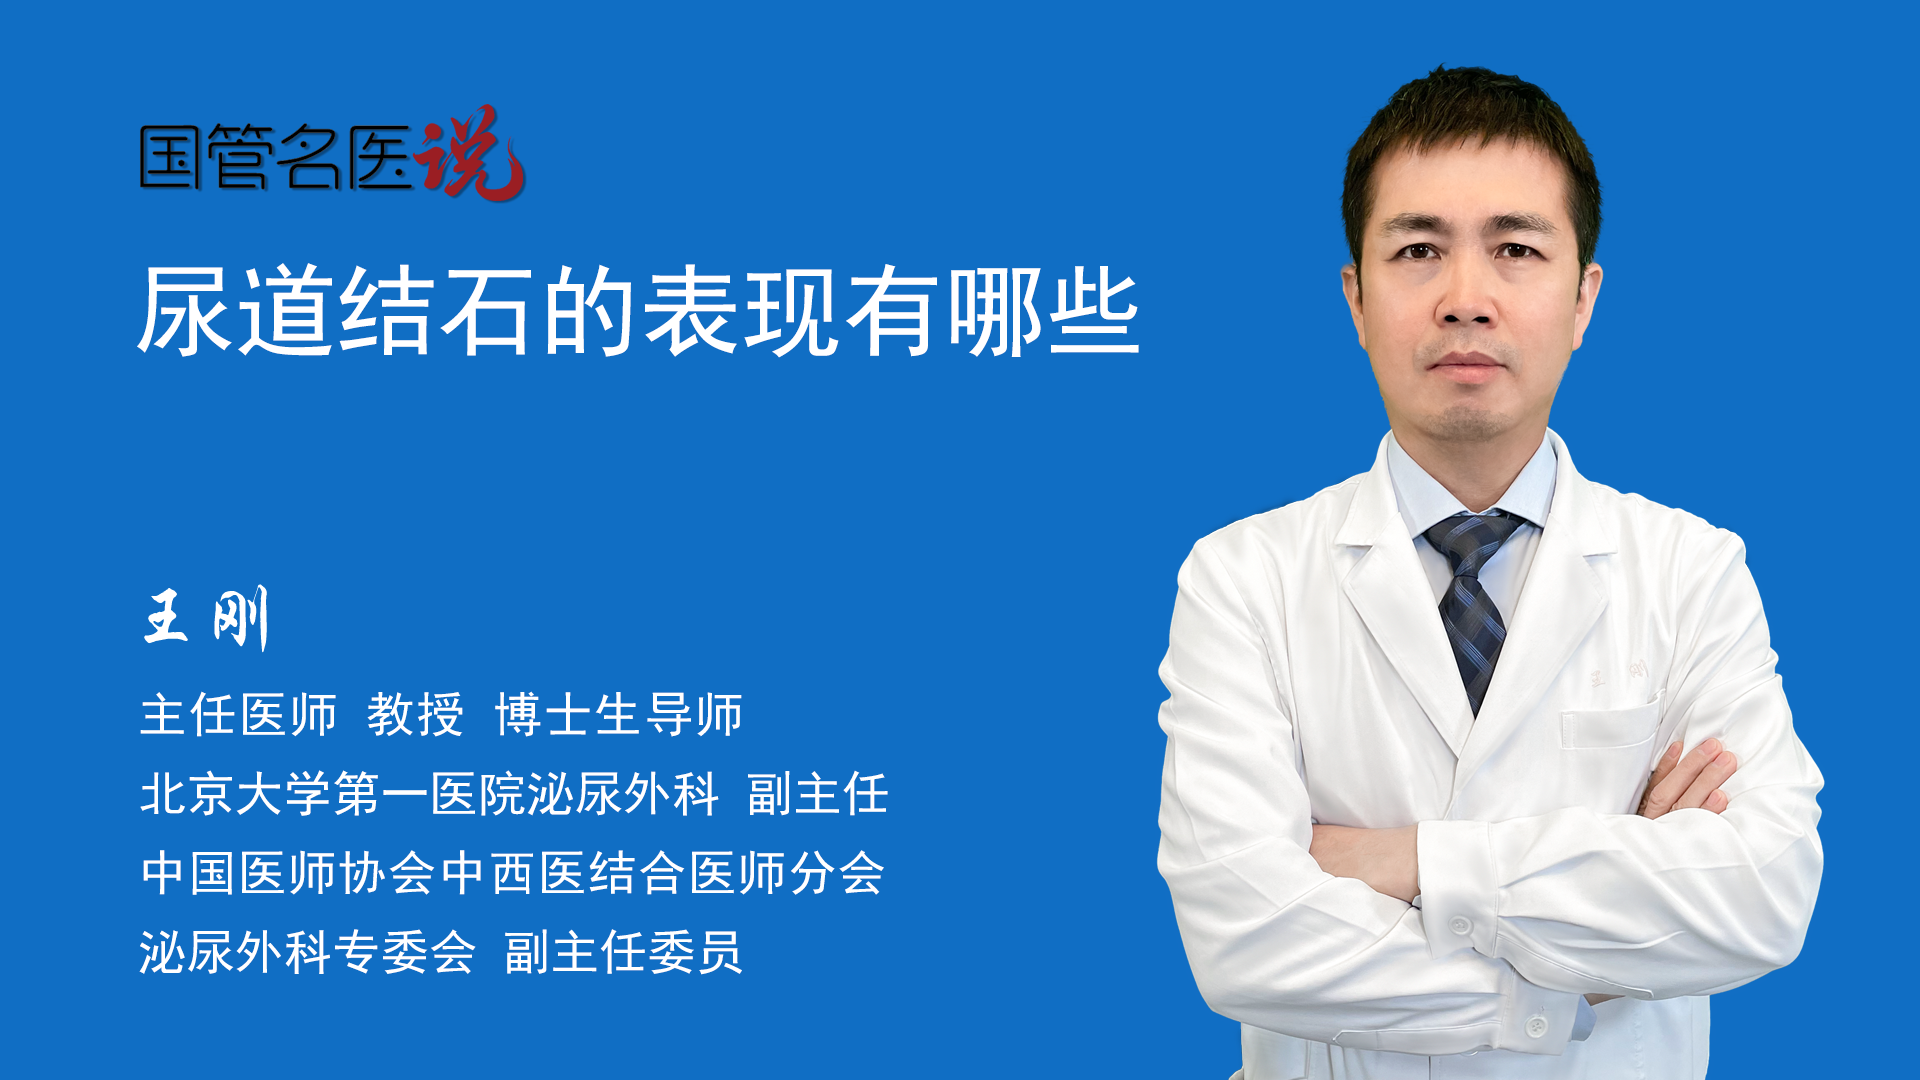 宝丰县中医院成功为患者取出一枚巨大膀胱结石-医药卫生网-医药卫生报-河南省卫生健康委员会主管